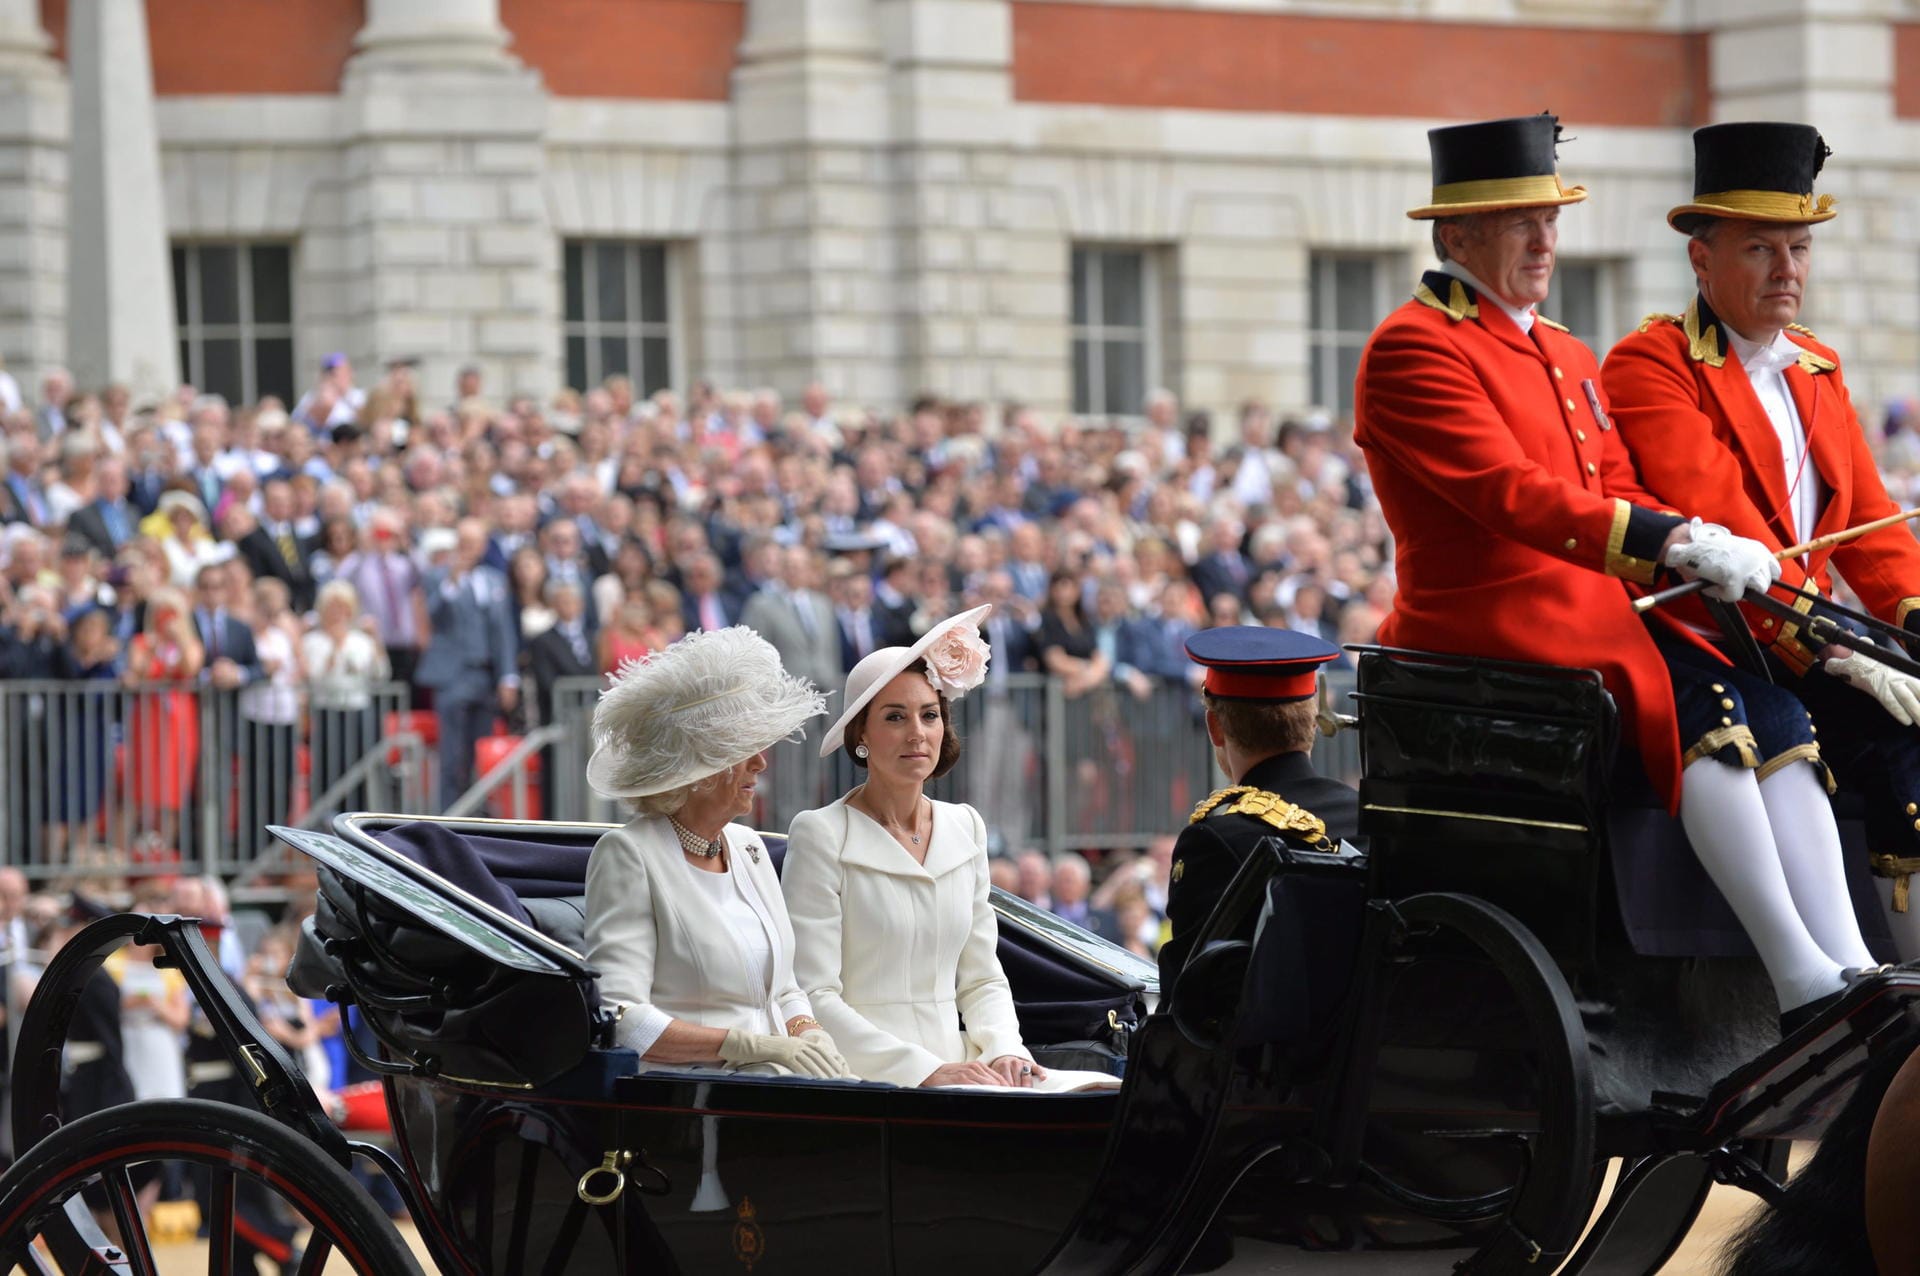 Auch Herzogin Kate und Prinz Charles' Frau Camilla machen sich - ganz in weiß gekleidet - in einer offenen Kutsche auf den Weg.